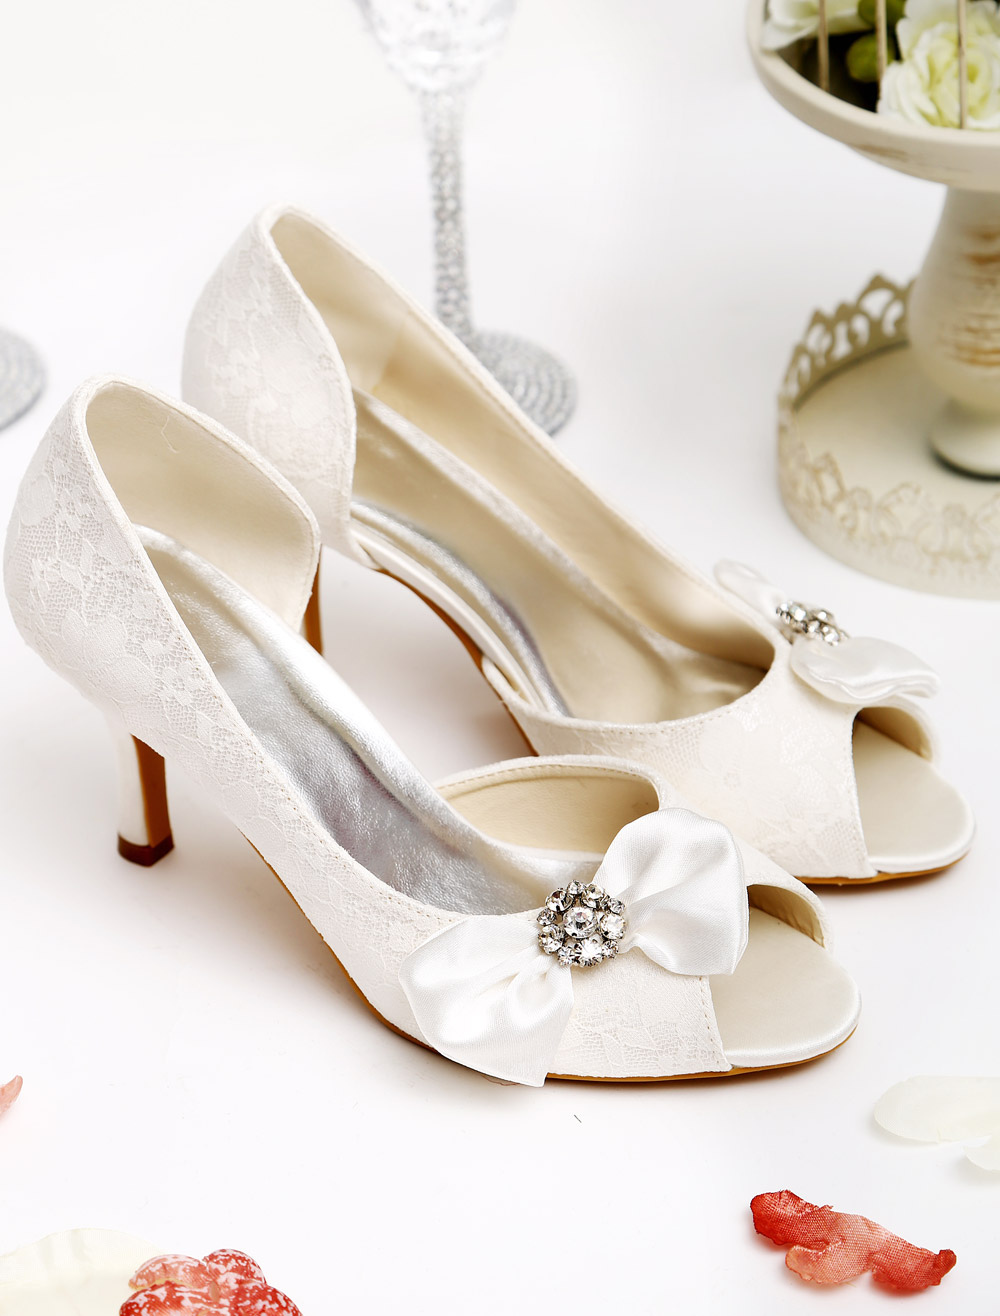 Ivory Wedding Sandals With Peep Toe - Milanoo.com